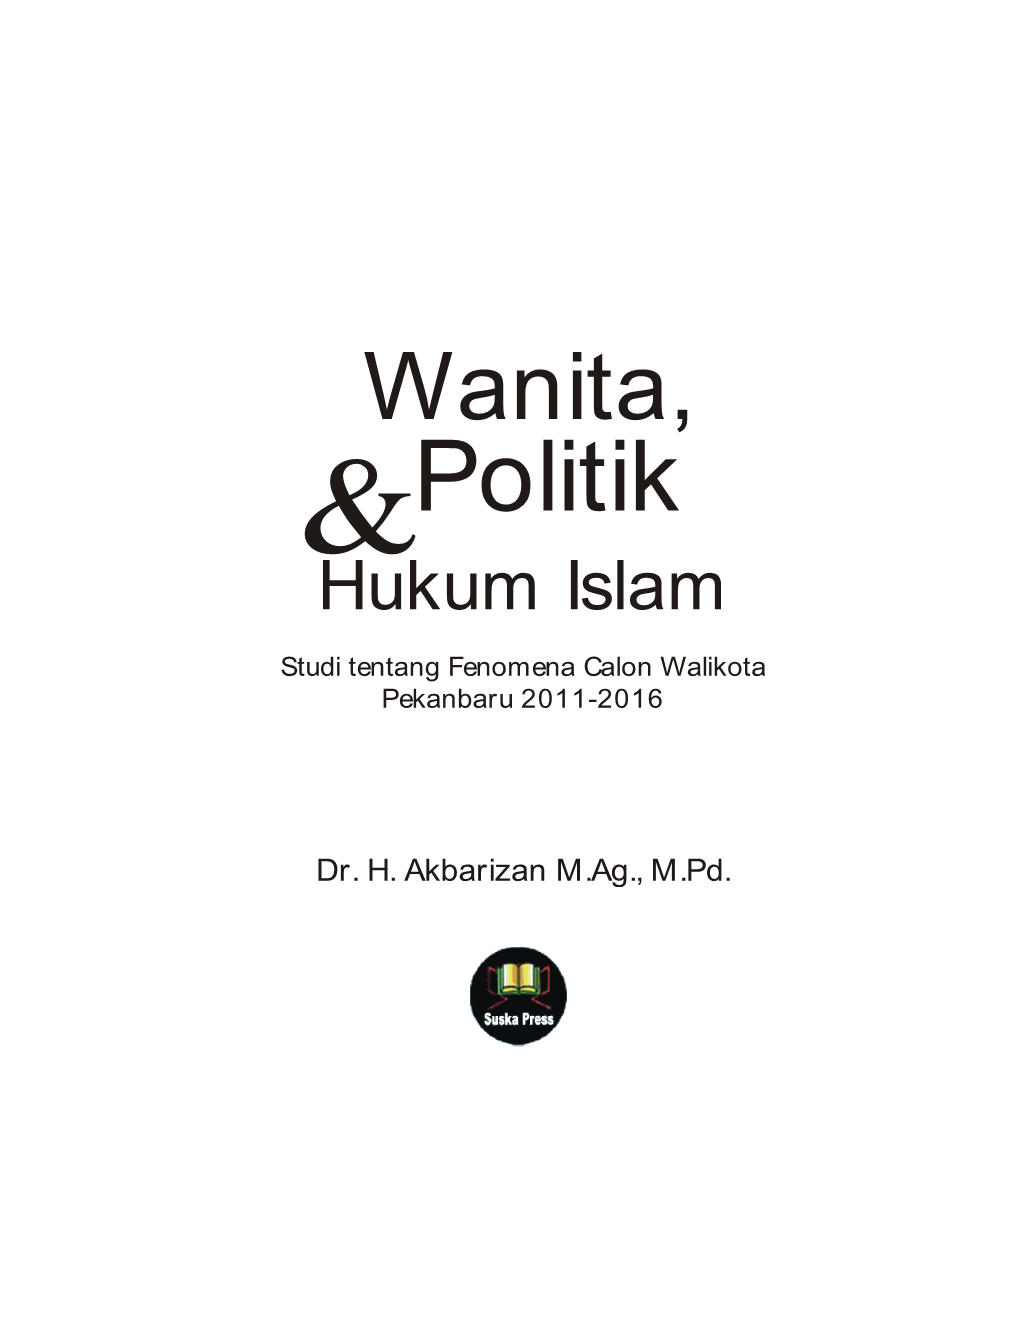 Wanita, &Politik Hukum Islam Studi Tentang Fenomena Calon Walikota Pekanbaru 2011-2016